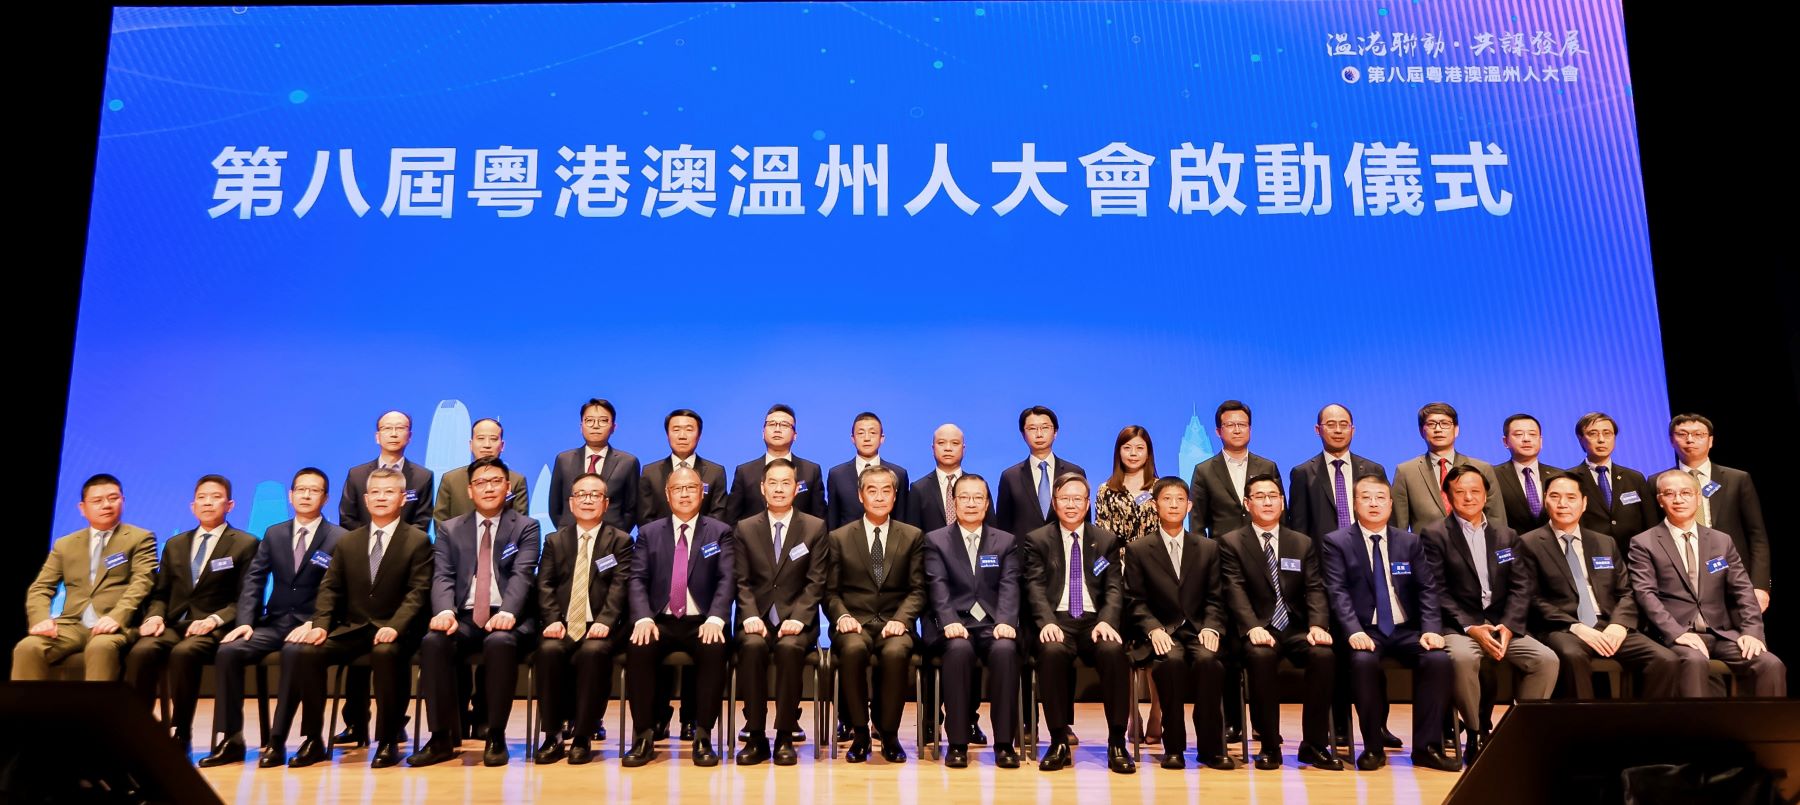 第八屆粵港澳溫州人大會在香港舉行